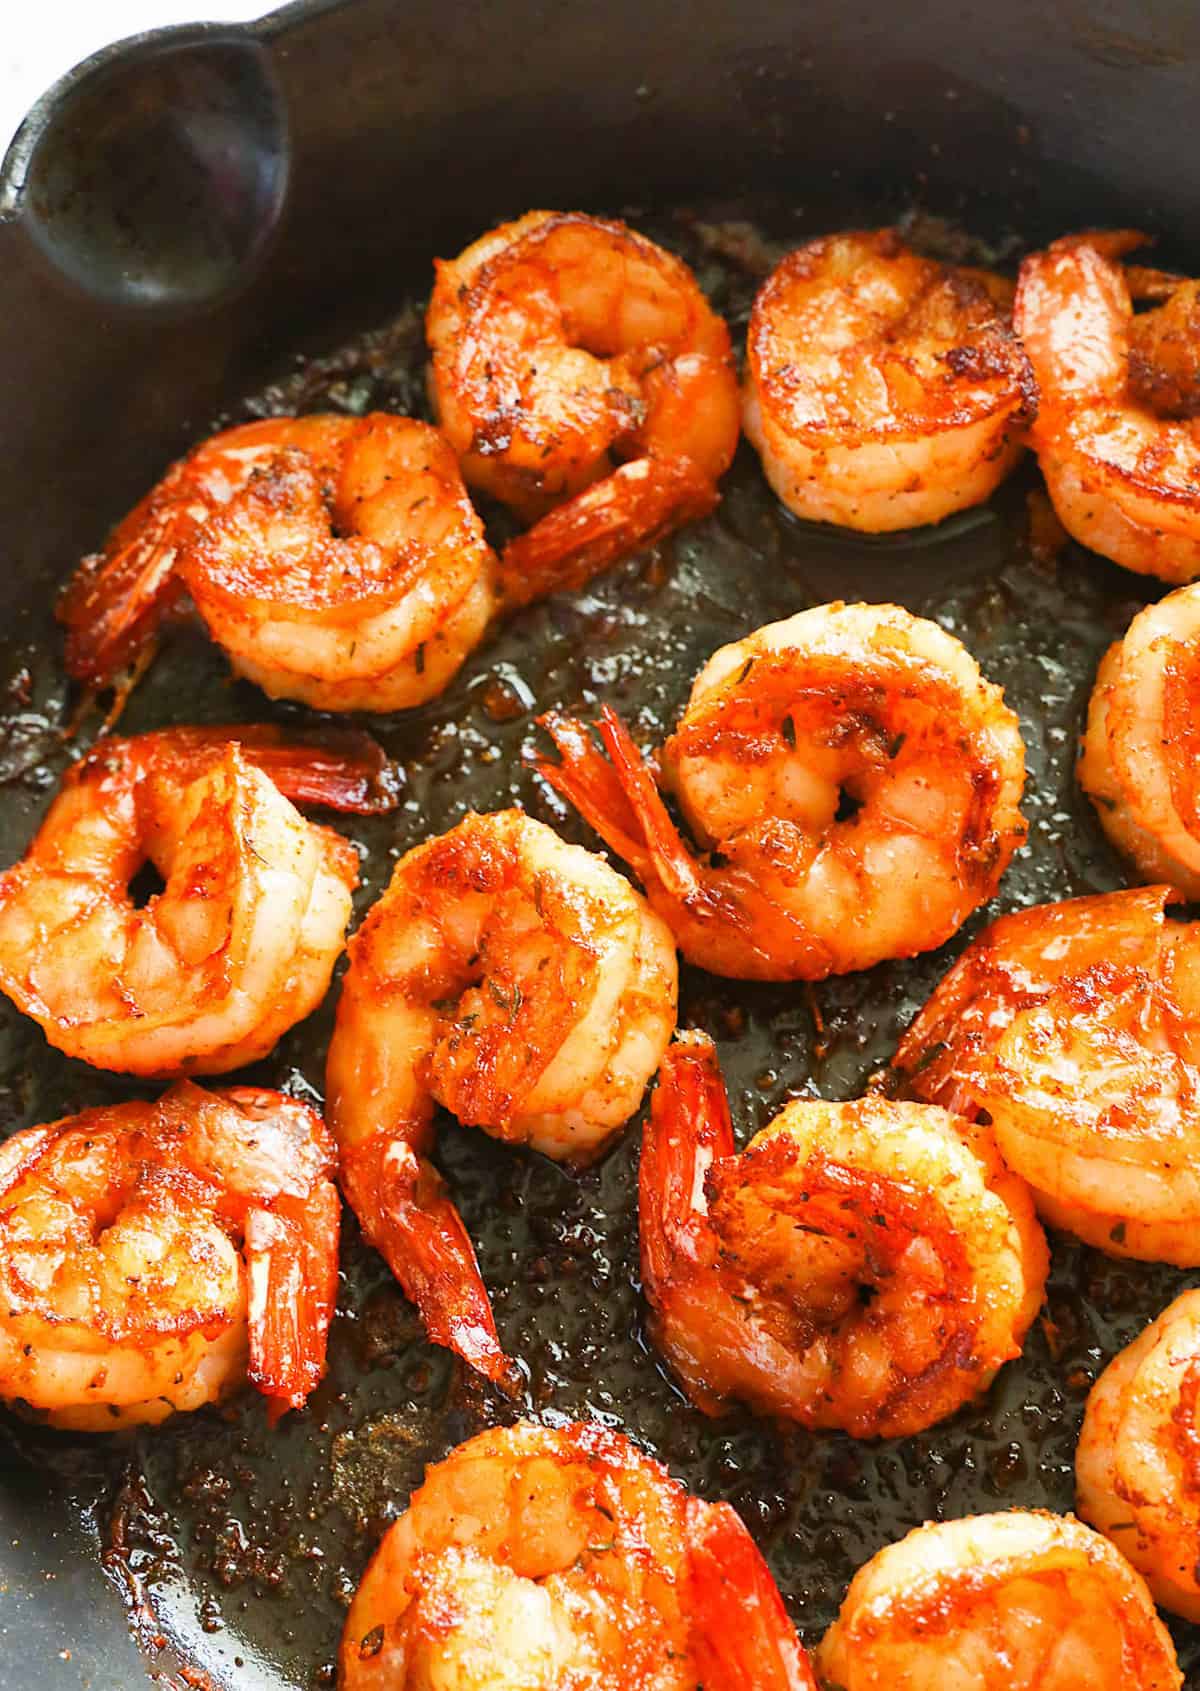 Enjoy Cajun shrimp as an appetizer